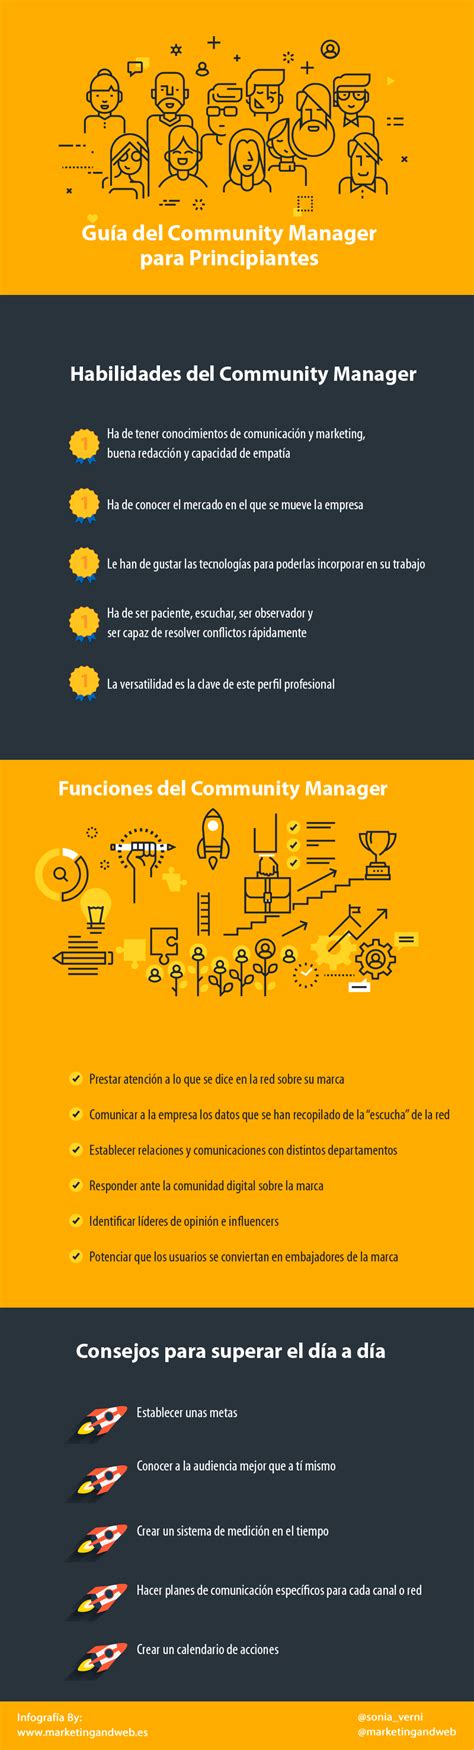 Hola Una Infografía Con La Guía Del Community Manager Para